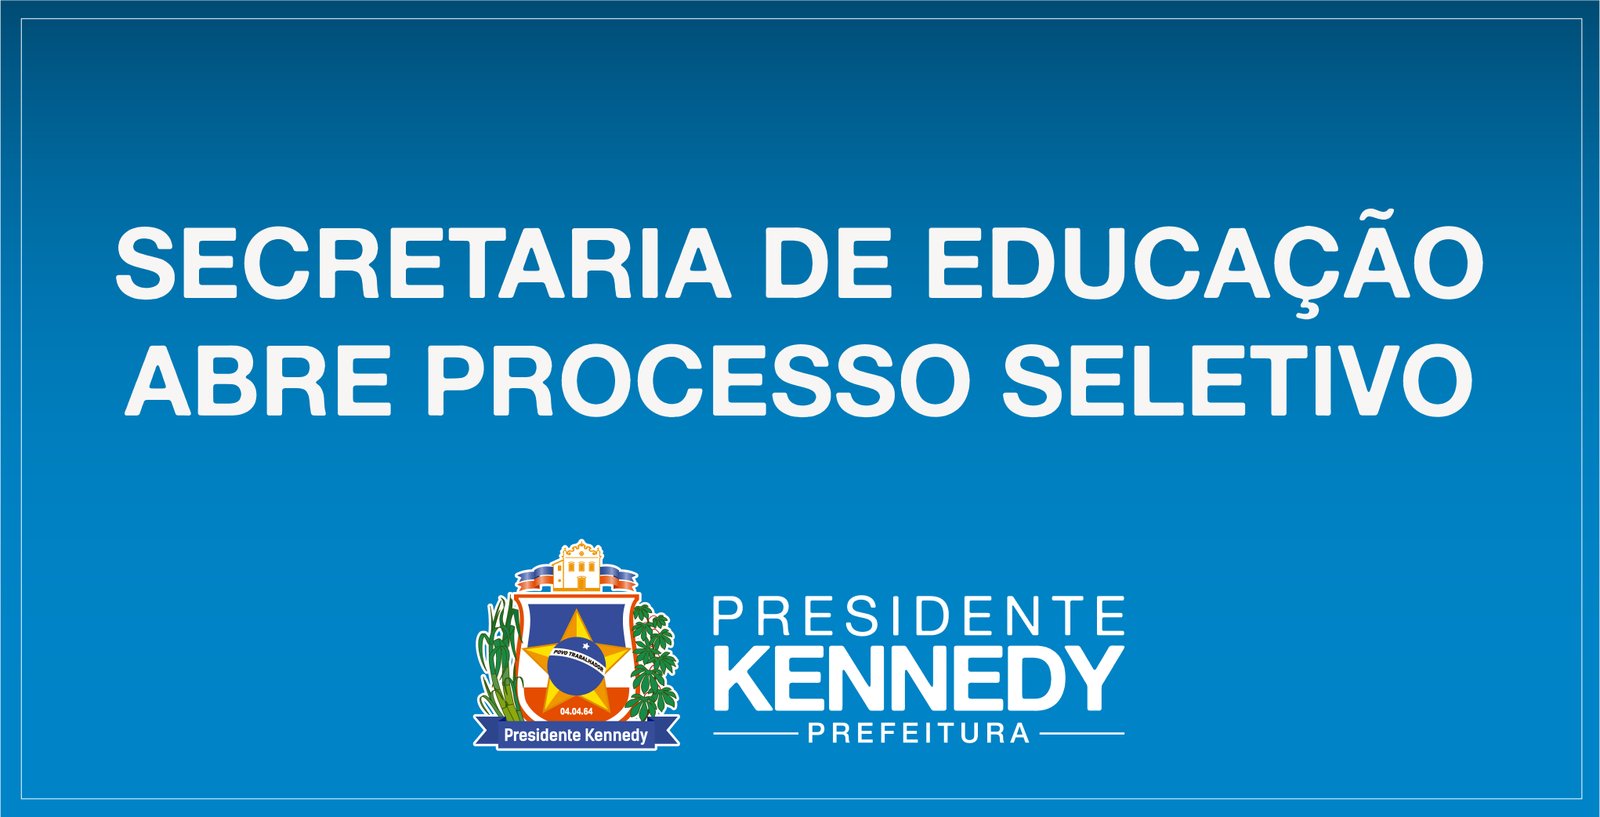 Secretaria de Educação abre processo seletivo em Presidente Kennedy